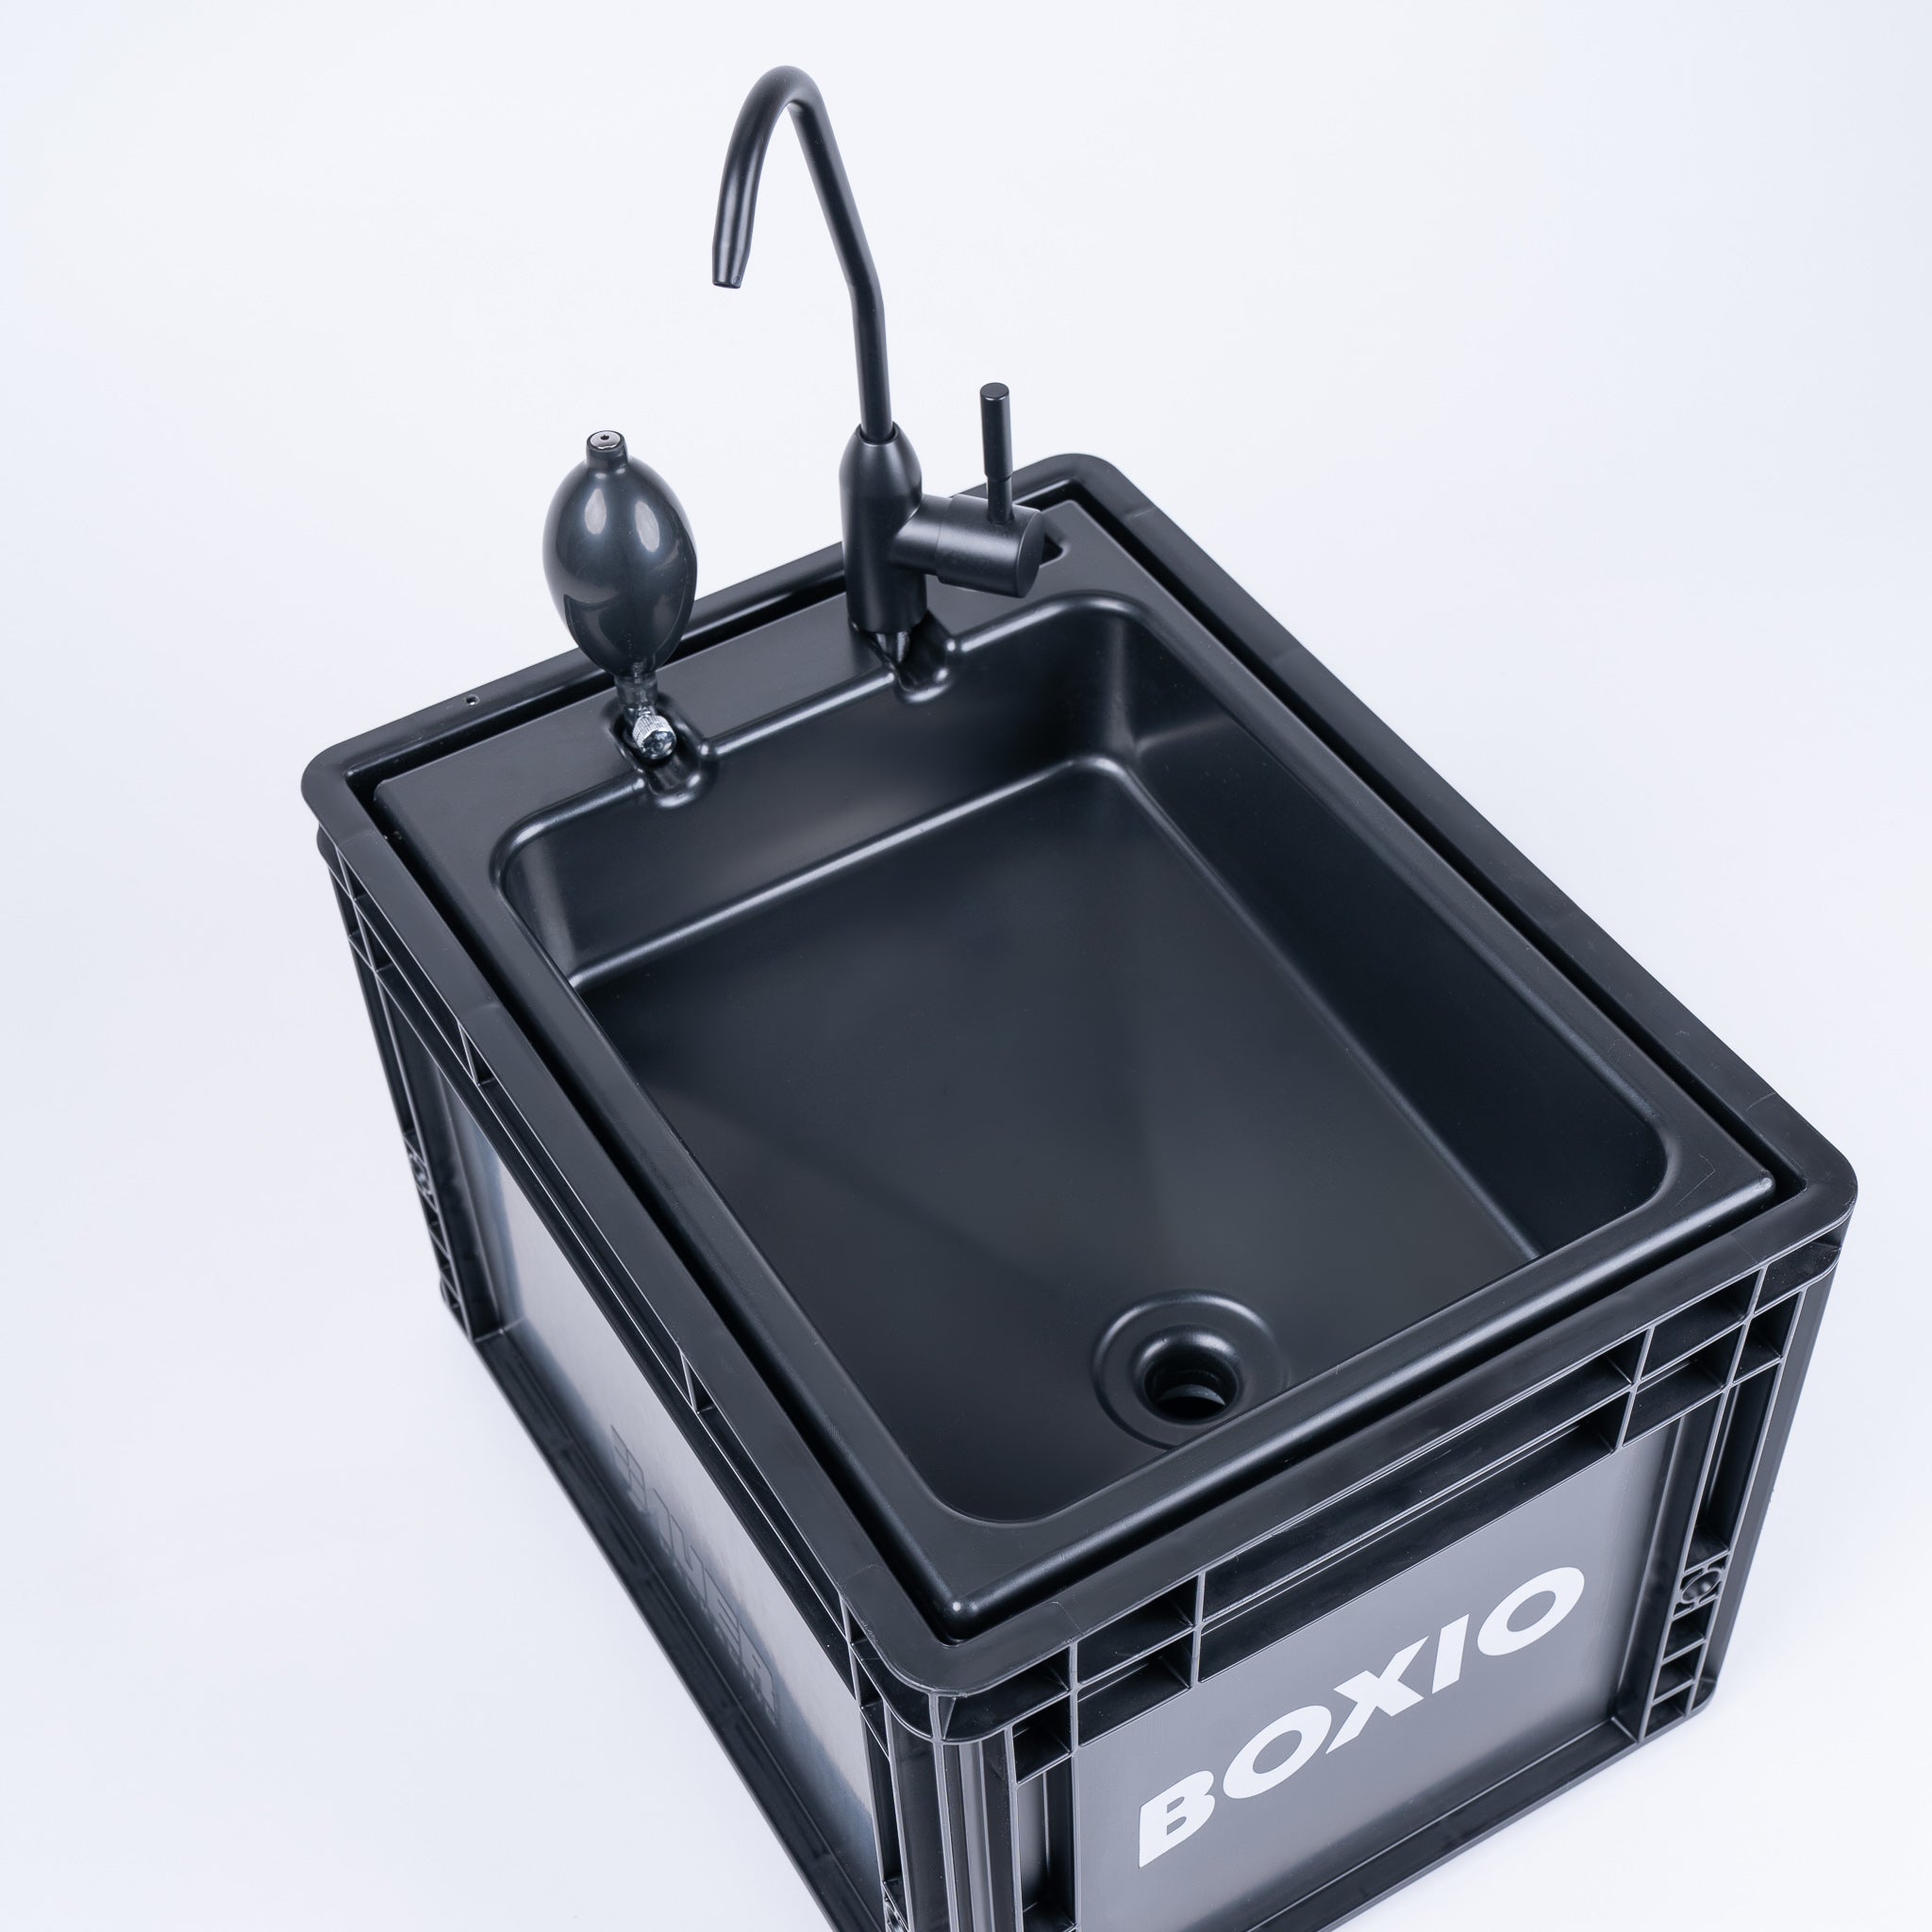 BOXIO - WASH: lavabo móvil con bomba manual, lavabo para furgoneta, camping  jardín, lavabo con grifo, plástico, negro